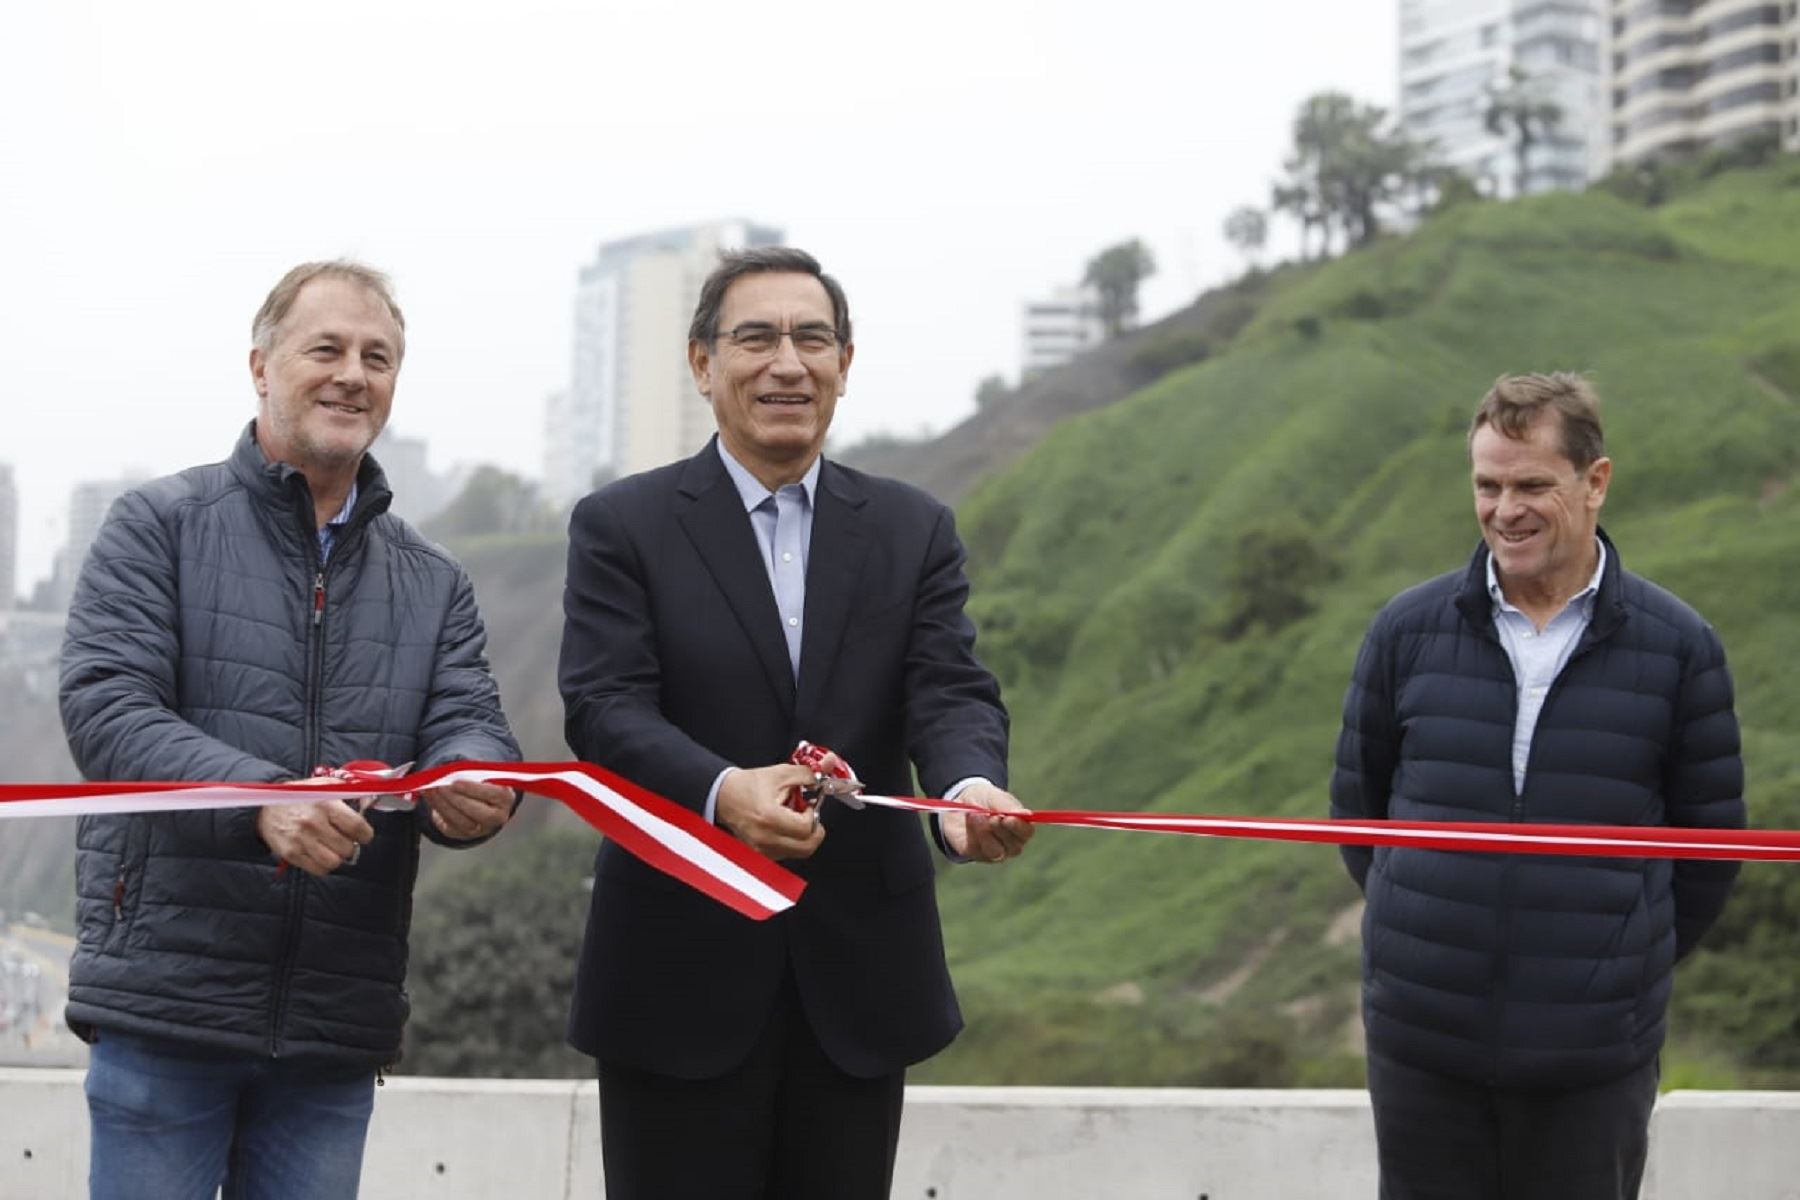 Presidente de la República, Martín Vizcarra, acompañando del alcalde de Lima, Jorge Muñoz y el presidente de Juegos 2019, Carlos Neauhus, inauguran viaducto Armendáriz. Foto: Presidencia.